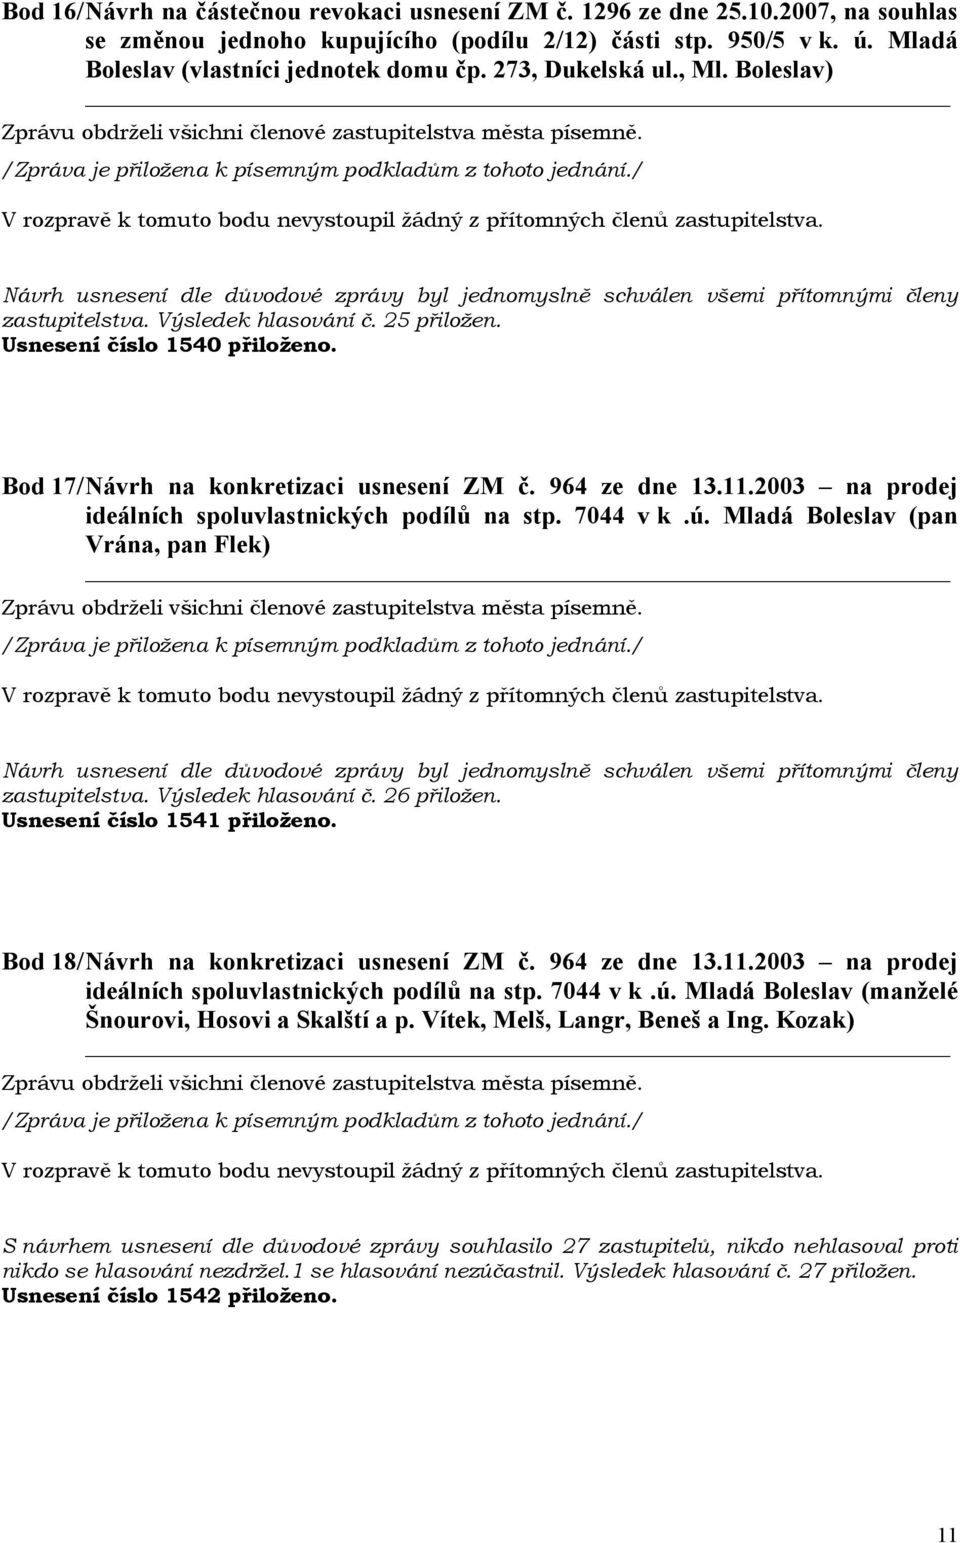 2003 na prodej ideálních spoluvlastnických podílů na stp. 7044 v k.ú. Mladá Boleslav (pan Vrána, pan Flek) zastupitelstva. Výsledek hlasování č. 26 přiložen. Usnesení číslo 1541 přiloženo.